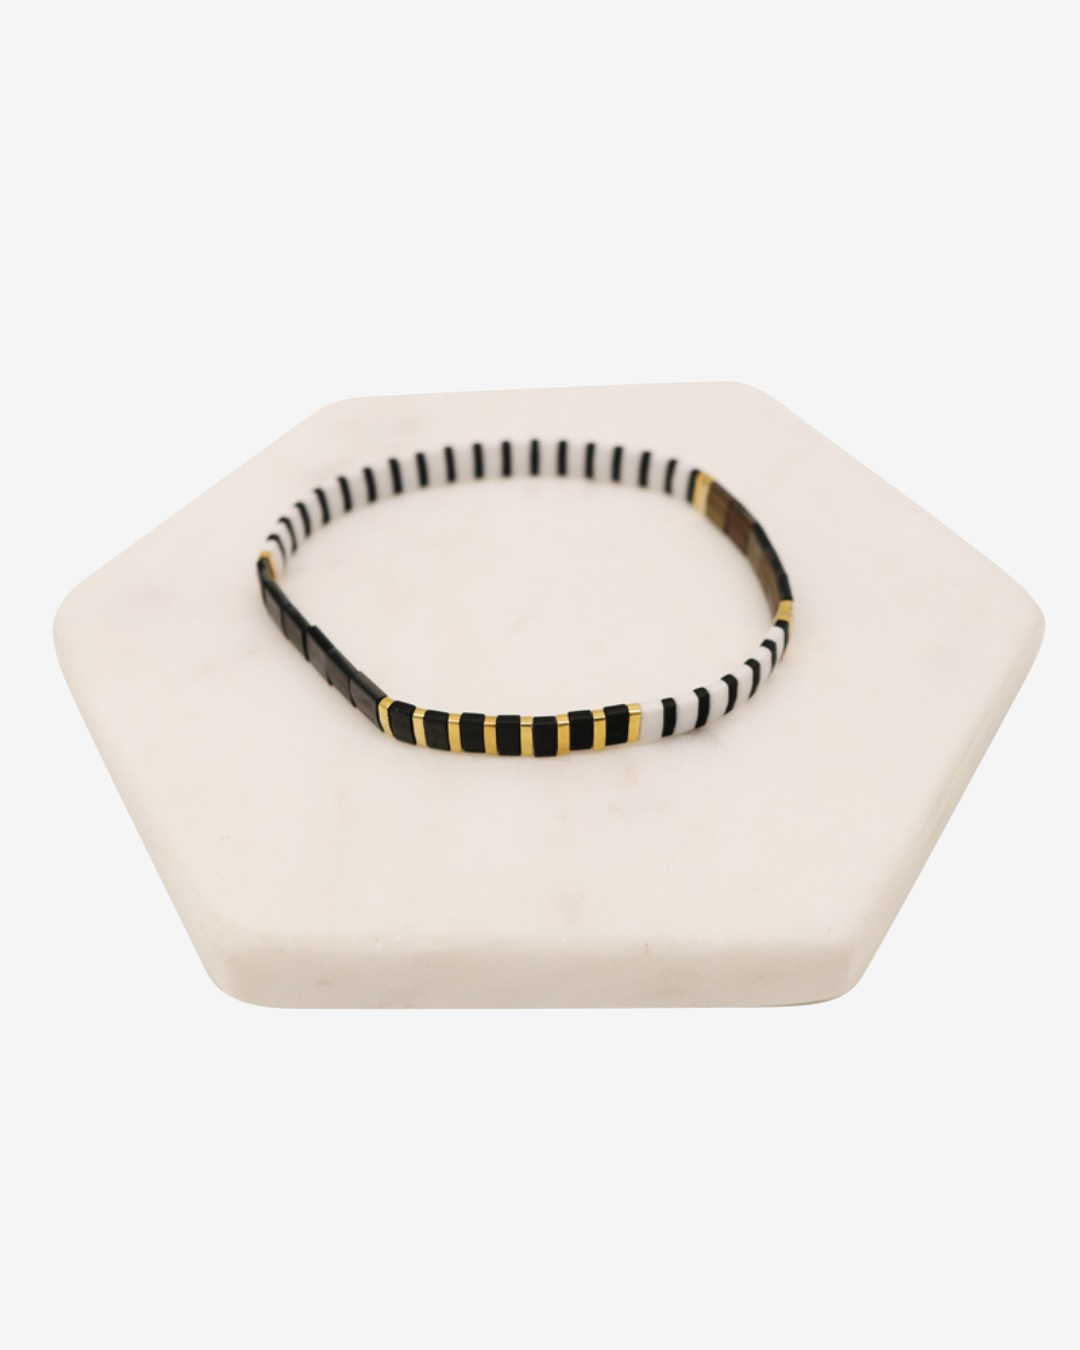 Black white and gold bracelet